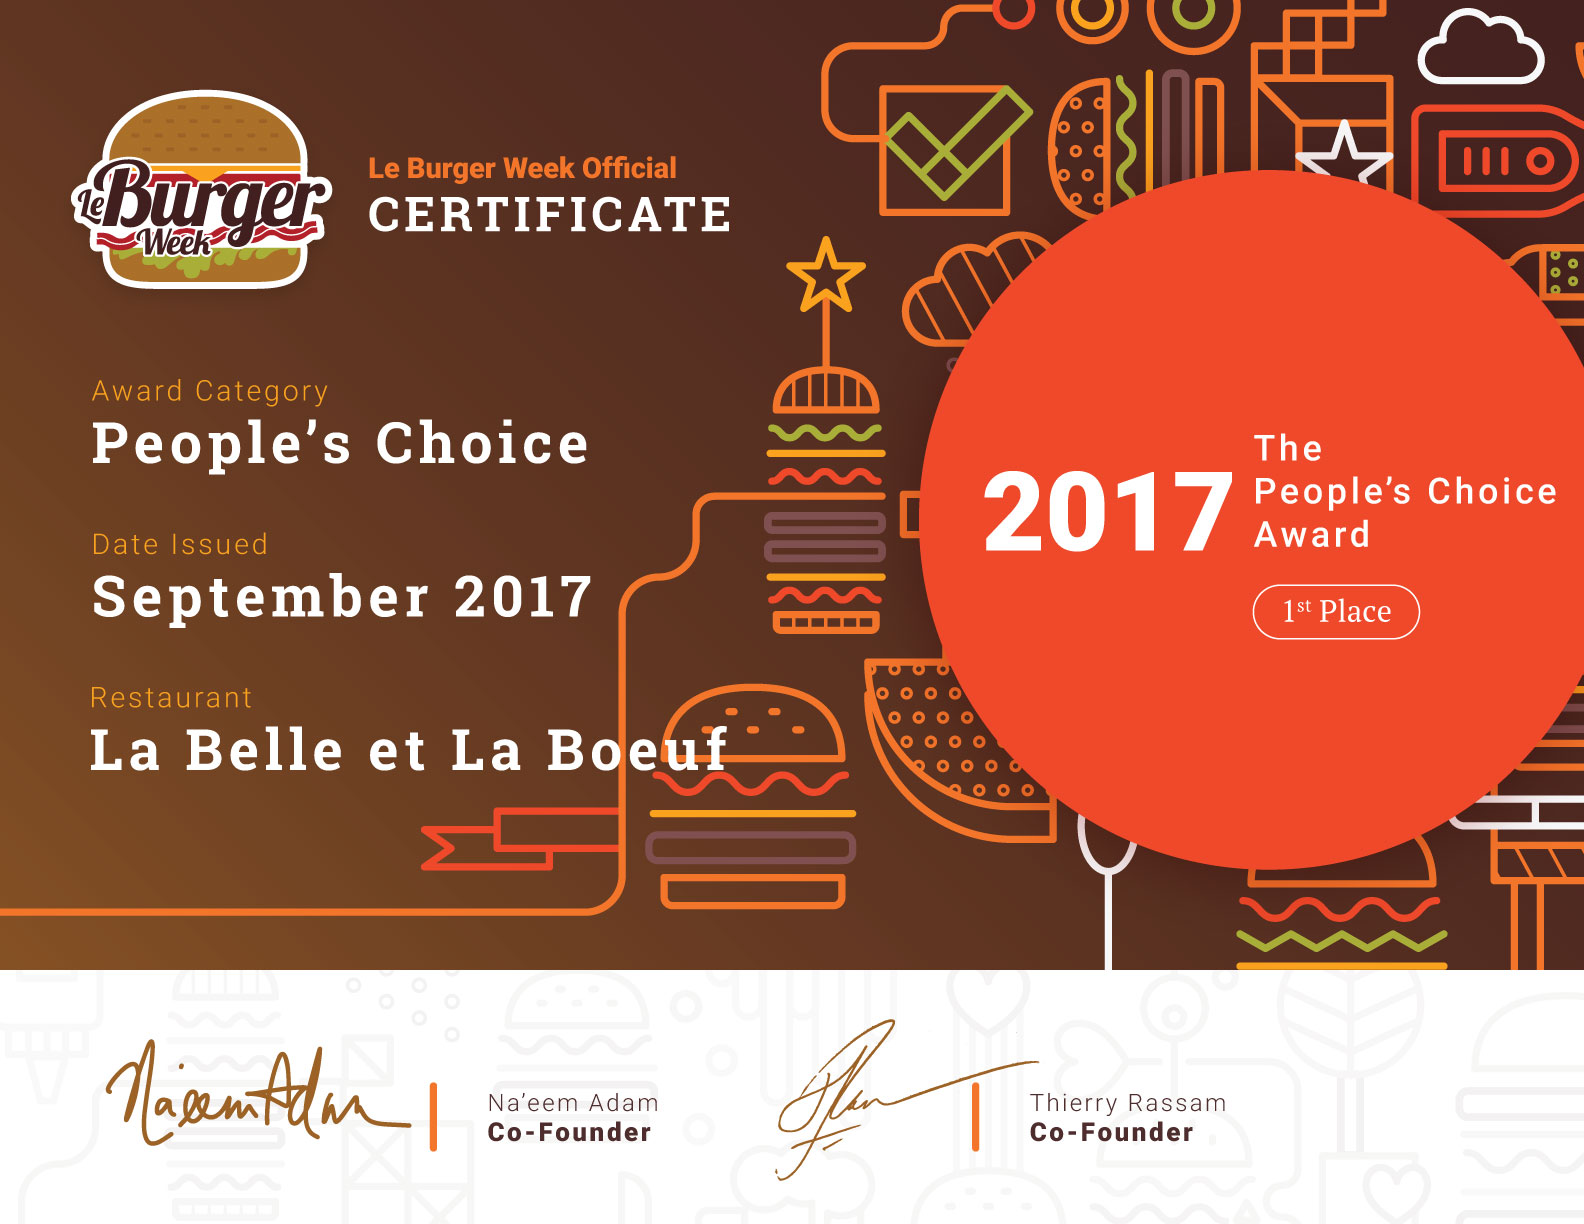 Le Burger Week certificate design by Loogart